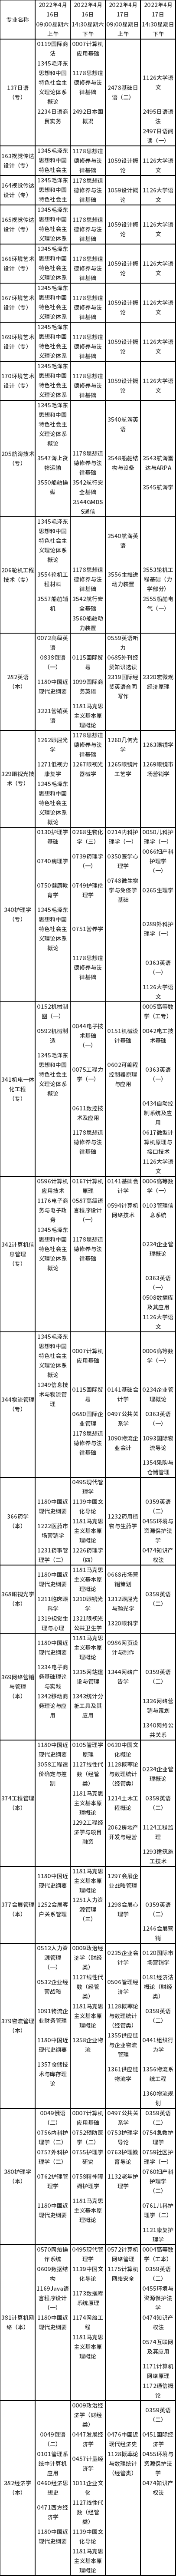 天津市2022年4月自学考试课程考试时间安排表